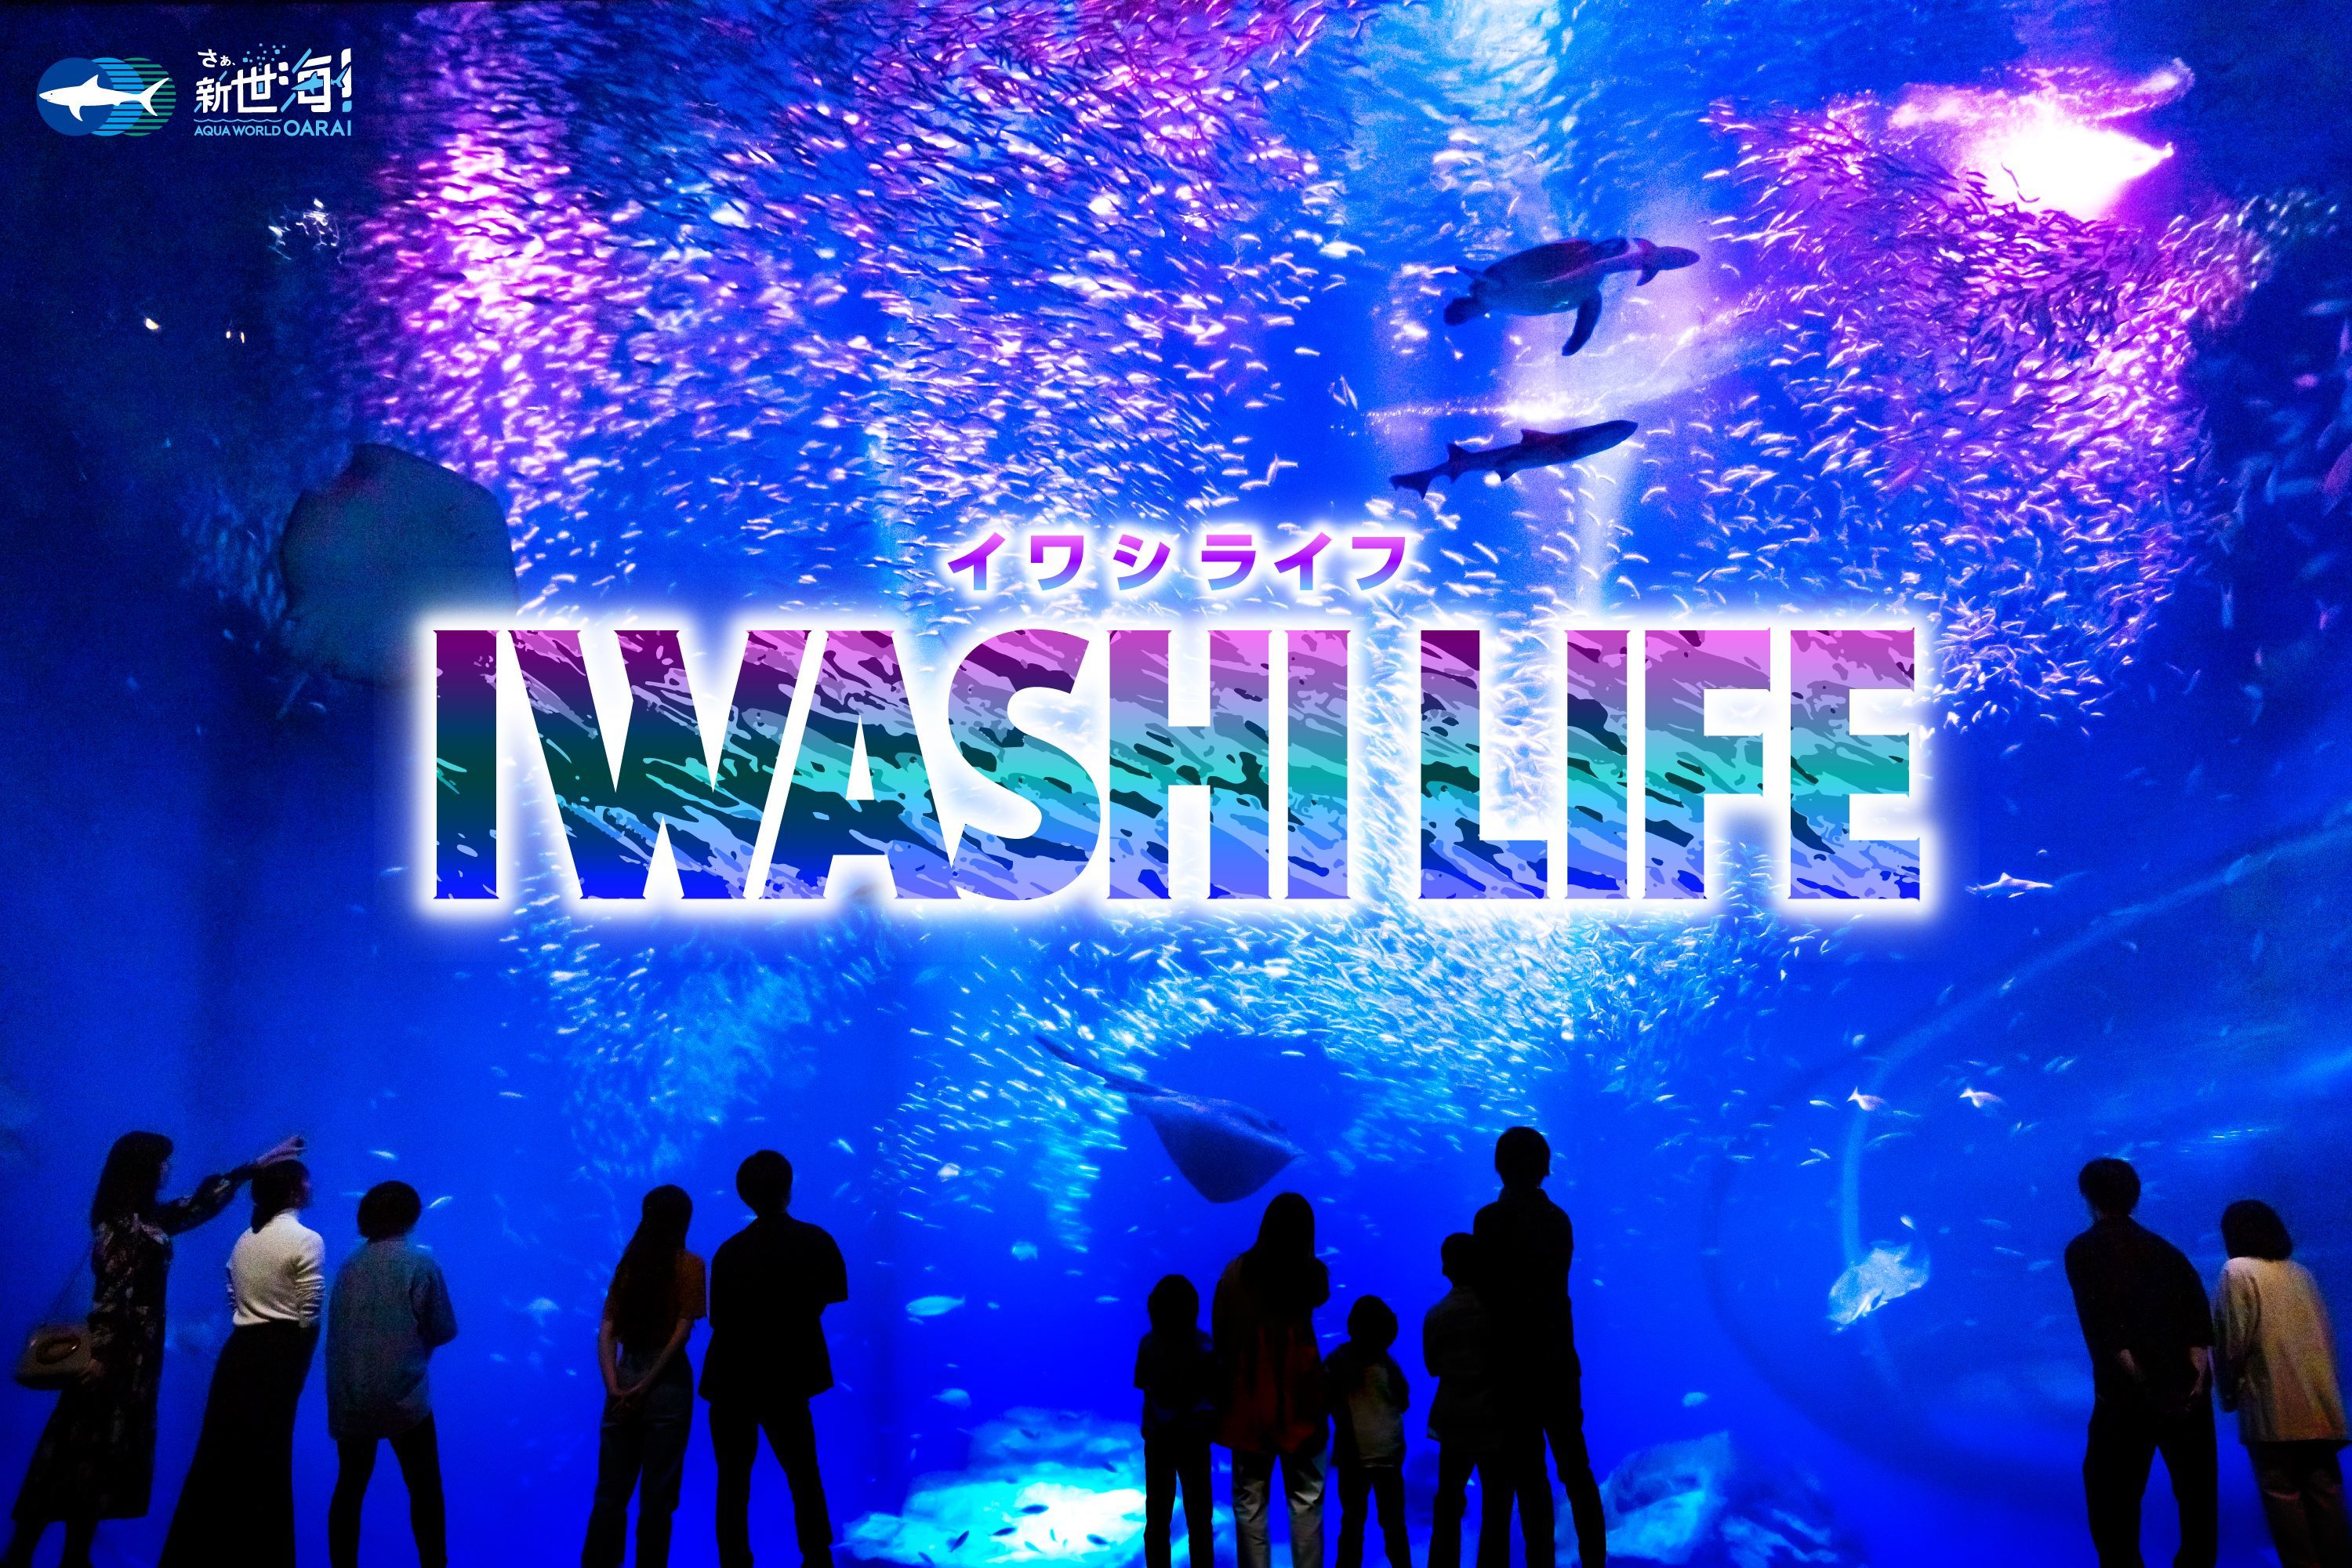 過去最多！約20,000匹のイワシたちが出会いの海で力強く群れ動く
『IWASHI LIFE』が5月25日からバージョンアップ！